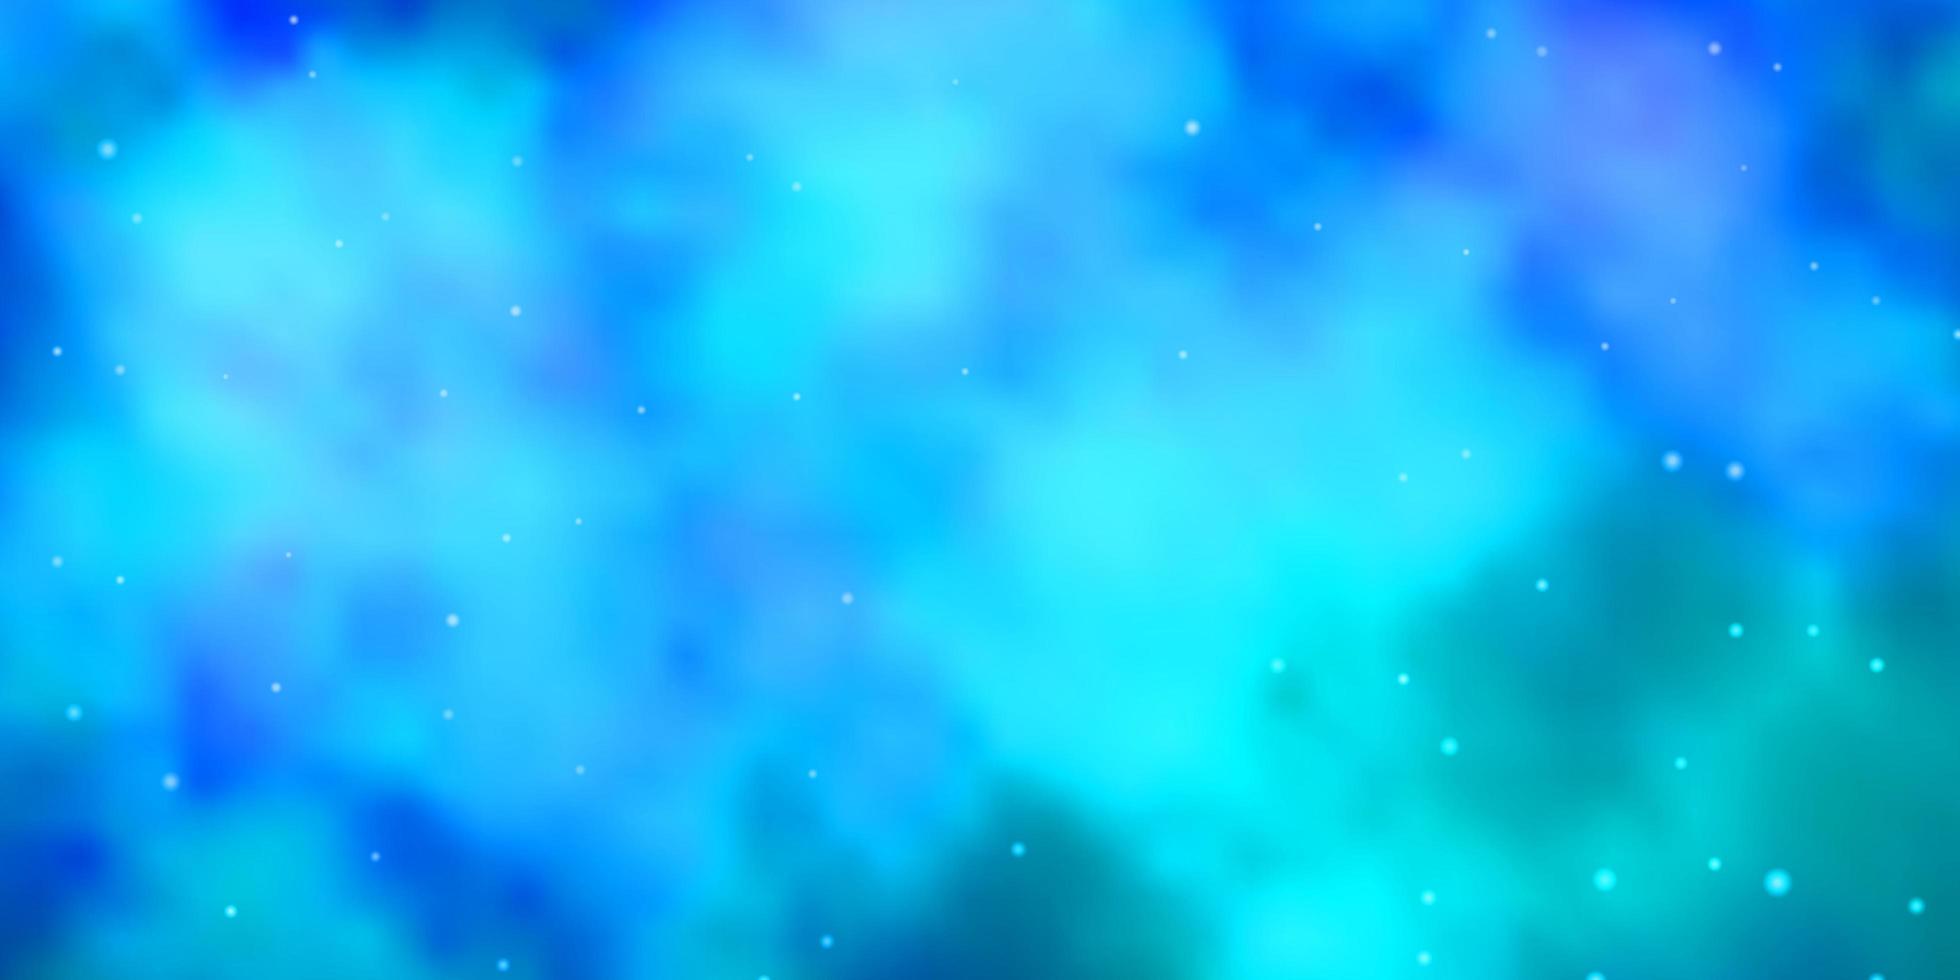 texture de vecteur bleu clair avec de belles étoiles.